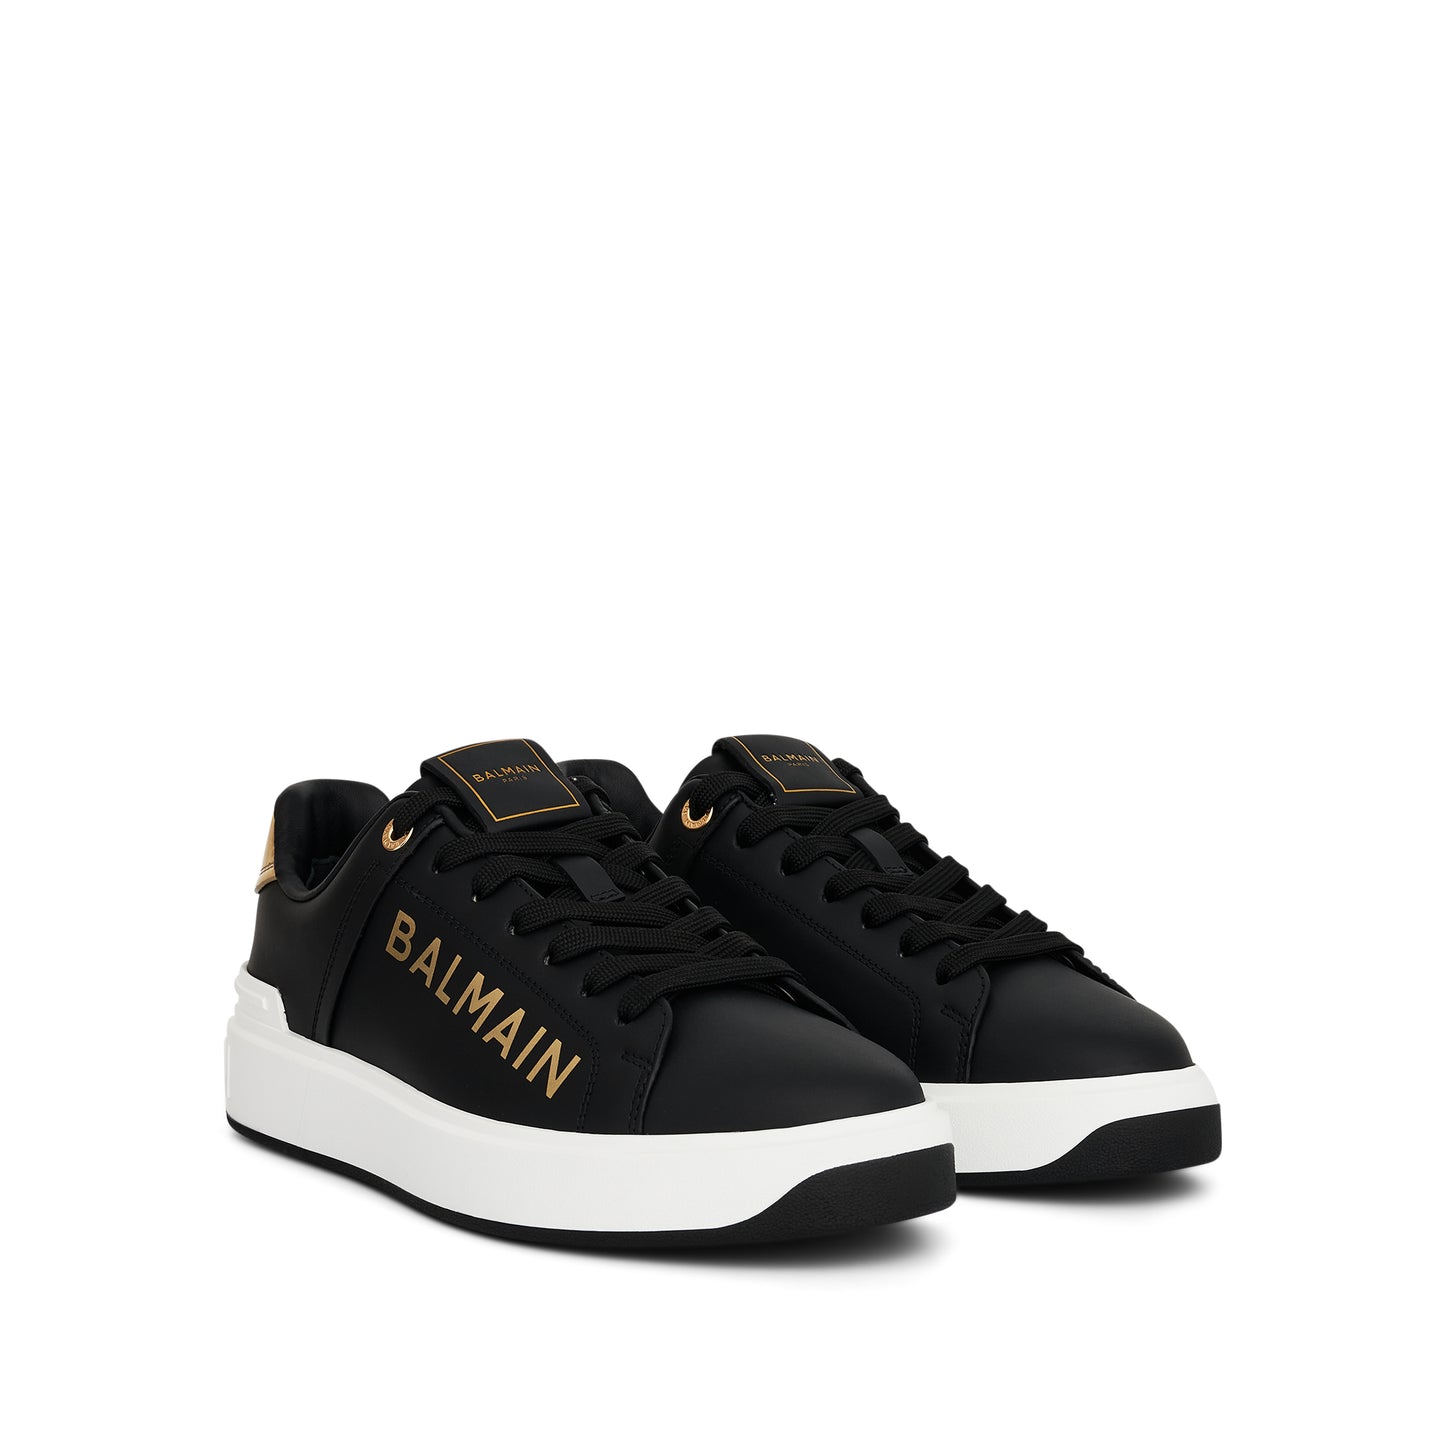 B-Court Low Sneaker in Black/Gold